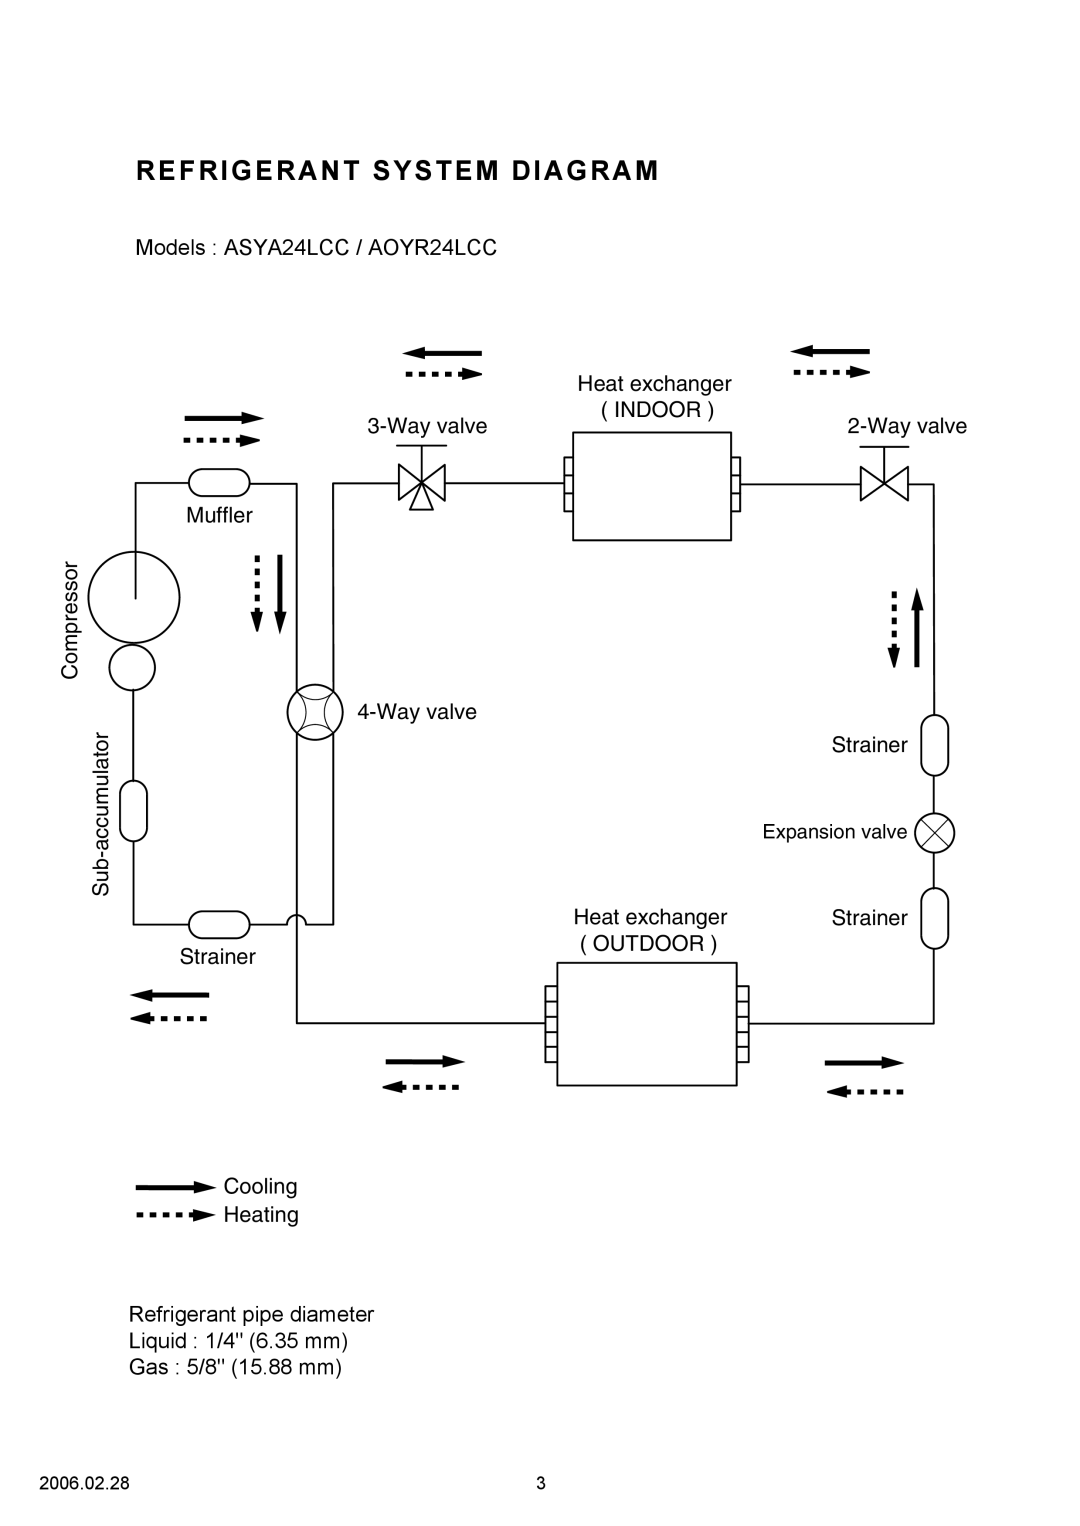 Fujitsu ASYA24LCC, AOYR24LCC specifications Refrigerant System Diagram 